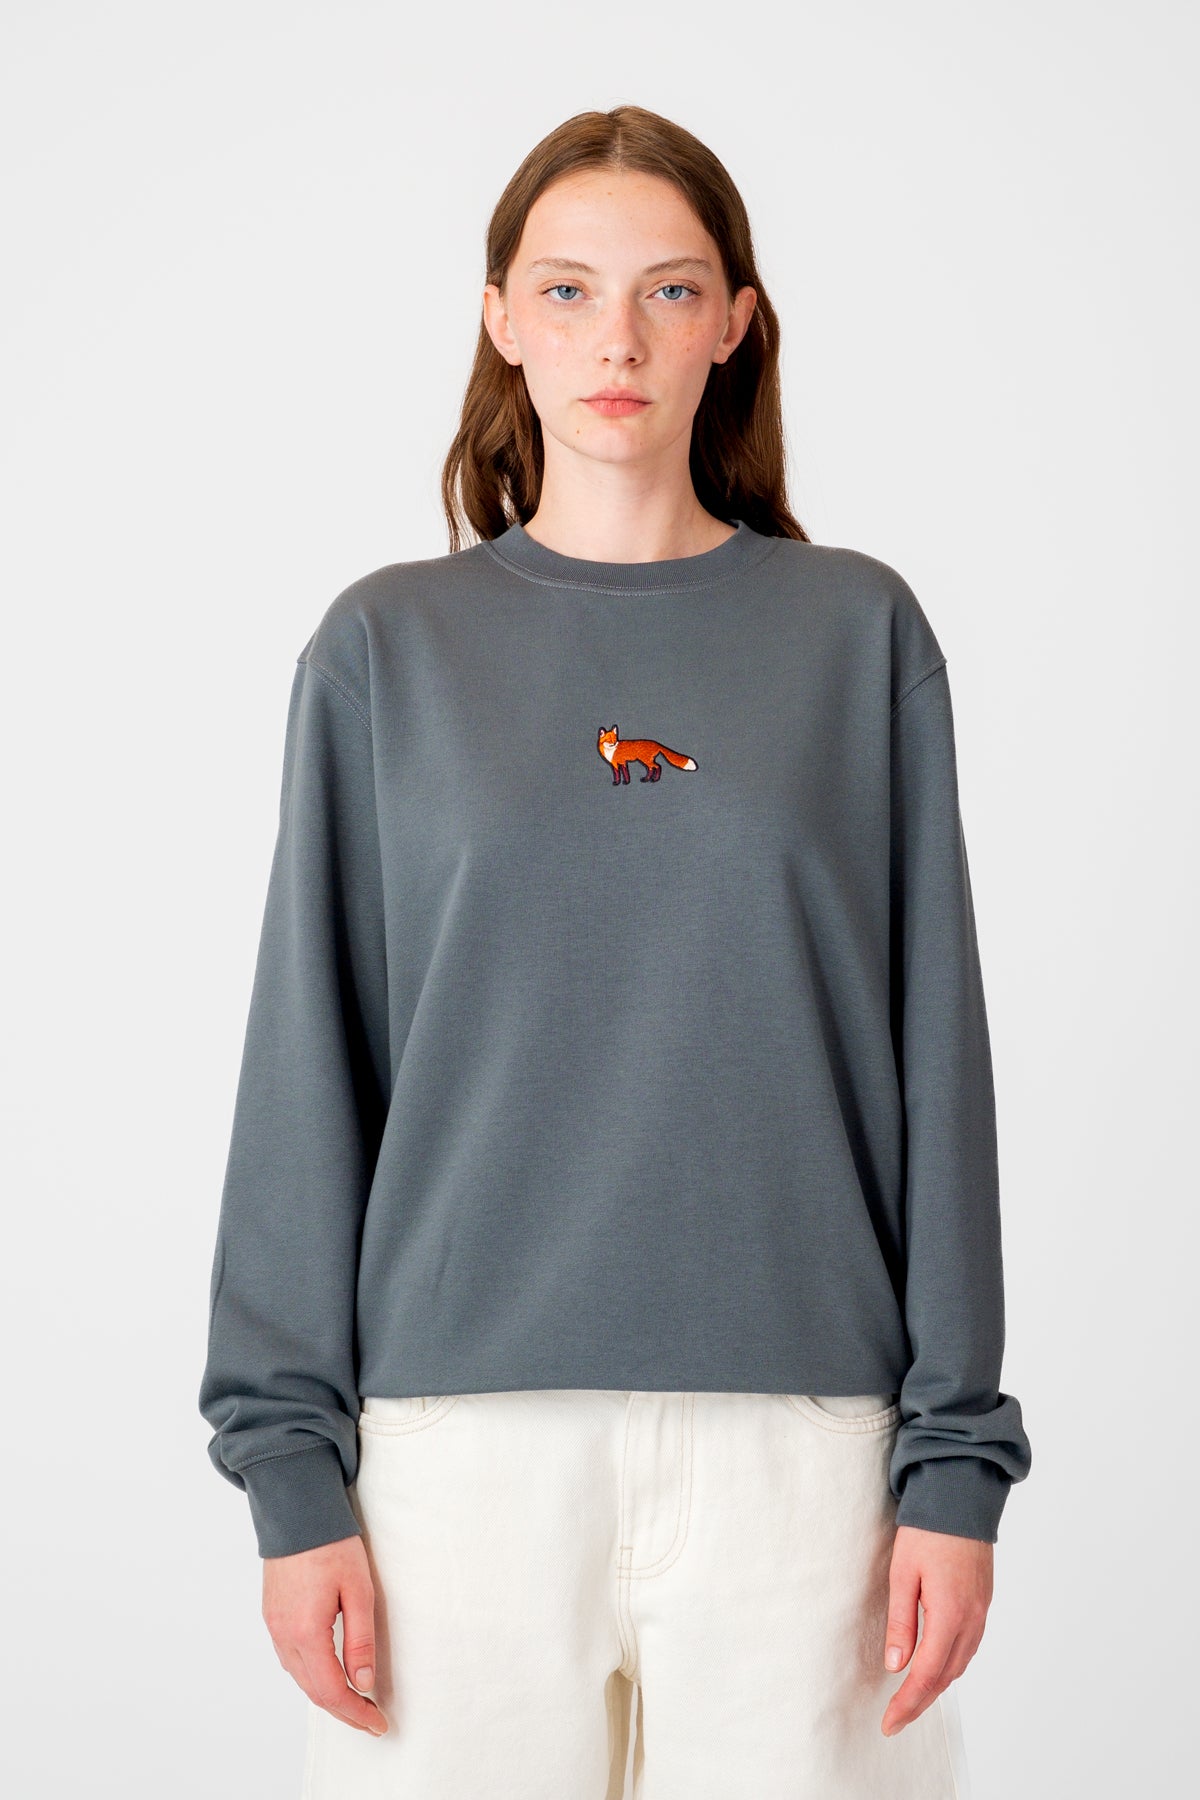 Kızıl Tilki Soft Fleece Sweatshirt - Gri